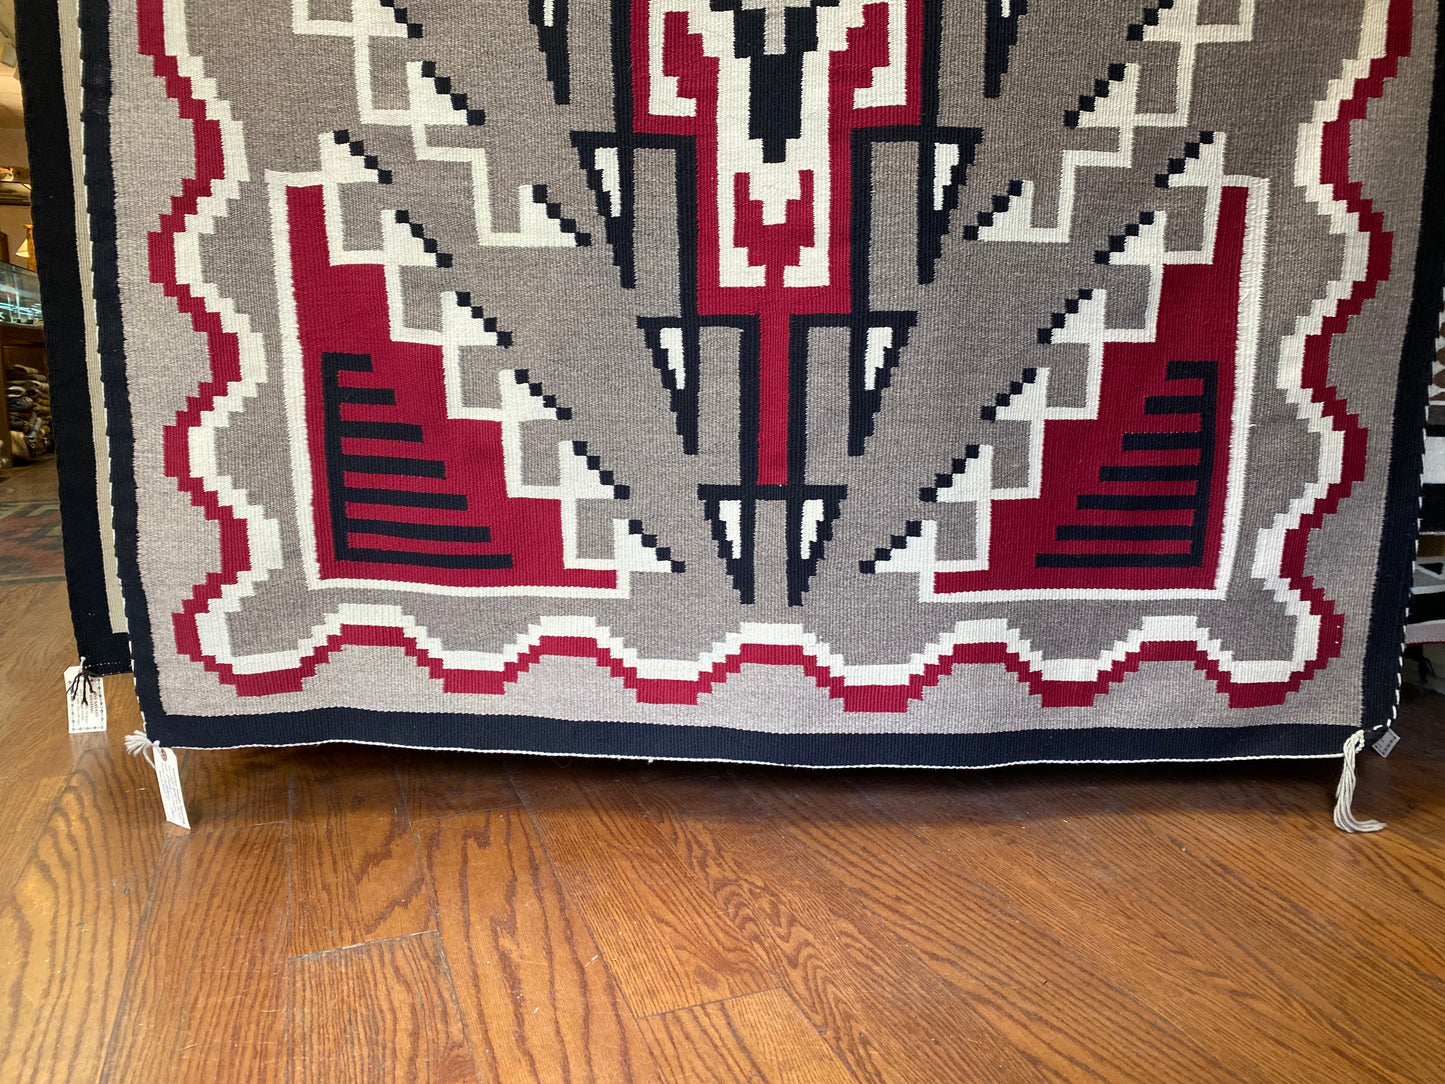 Ganado Navajo rug for sale, authentic navajo weaving, Klagetoh Navajo rug, telluride furnishings, telluride art gallery 